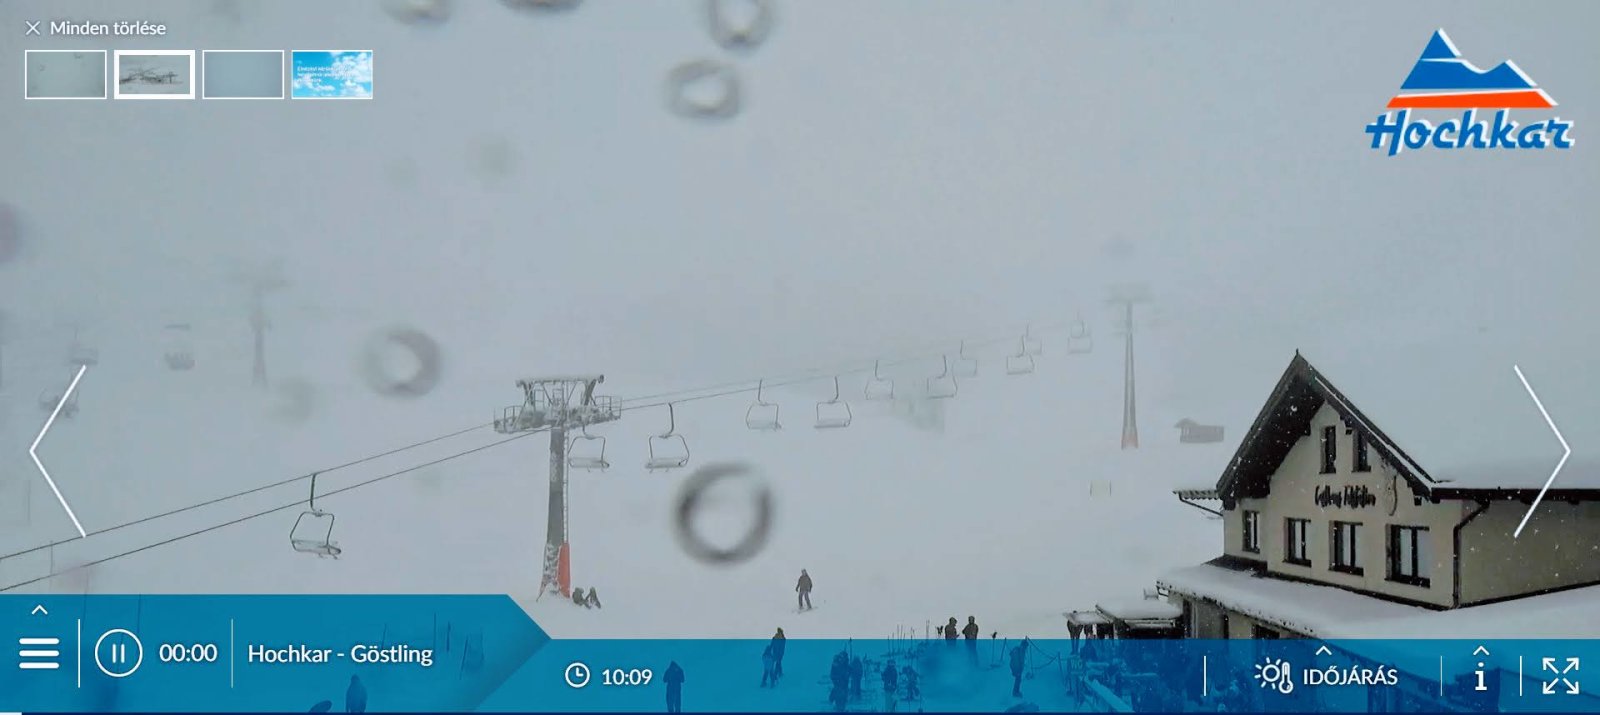 Délelőtti webkamera kép Hochkaron 2020.10.18. vasárnap